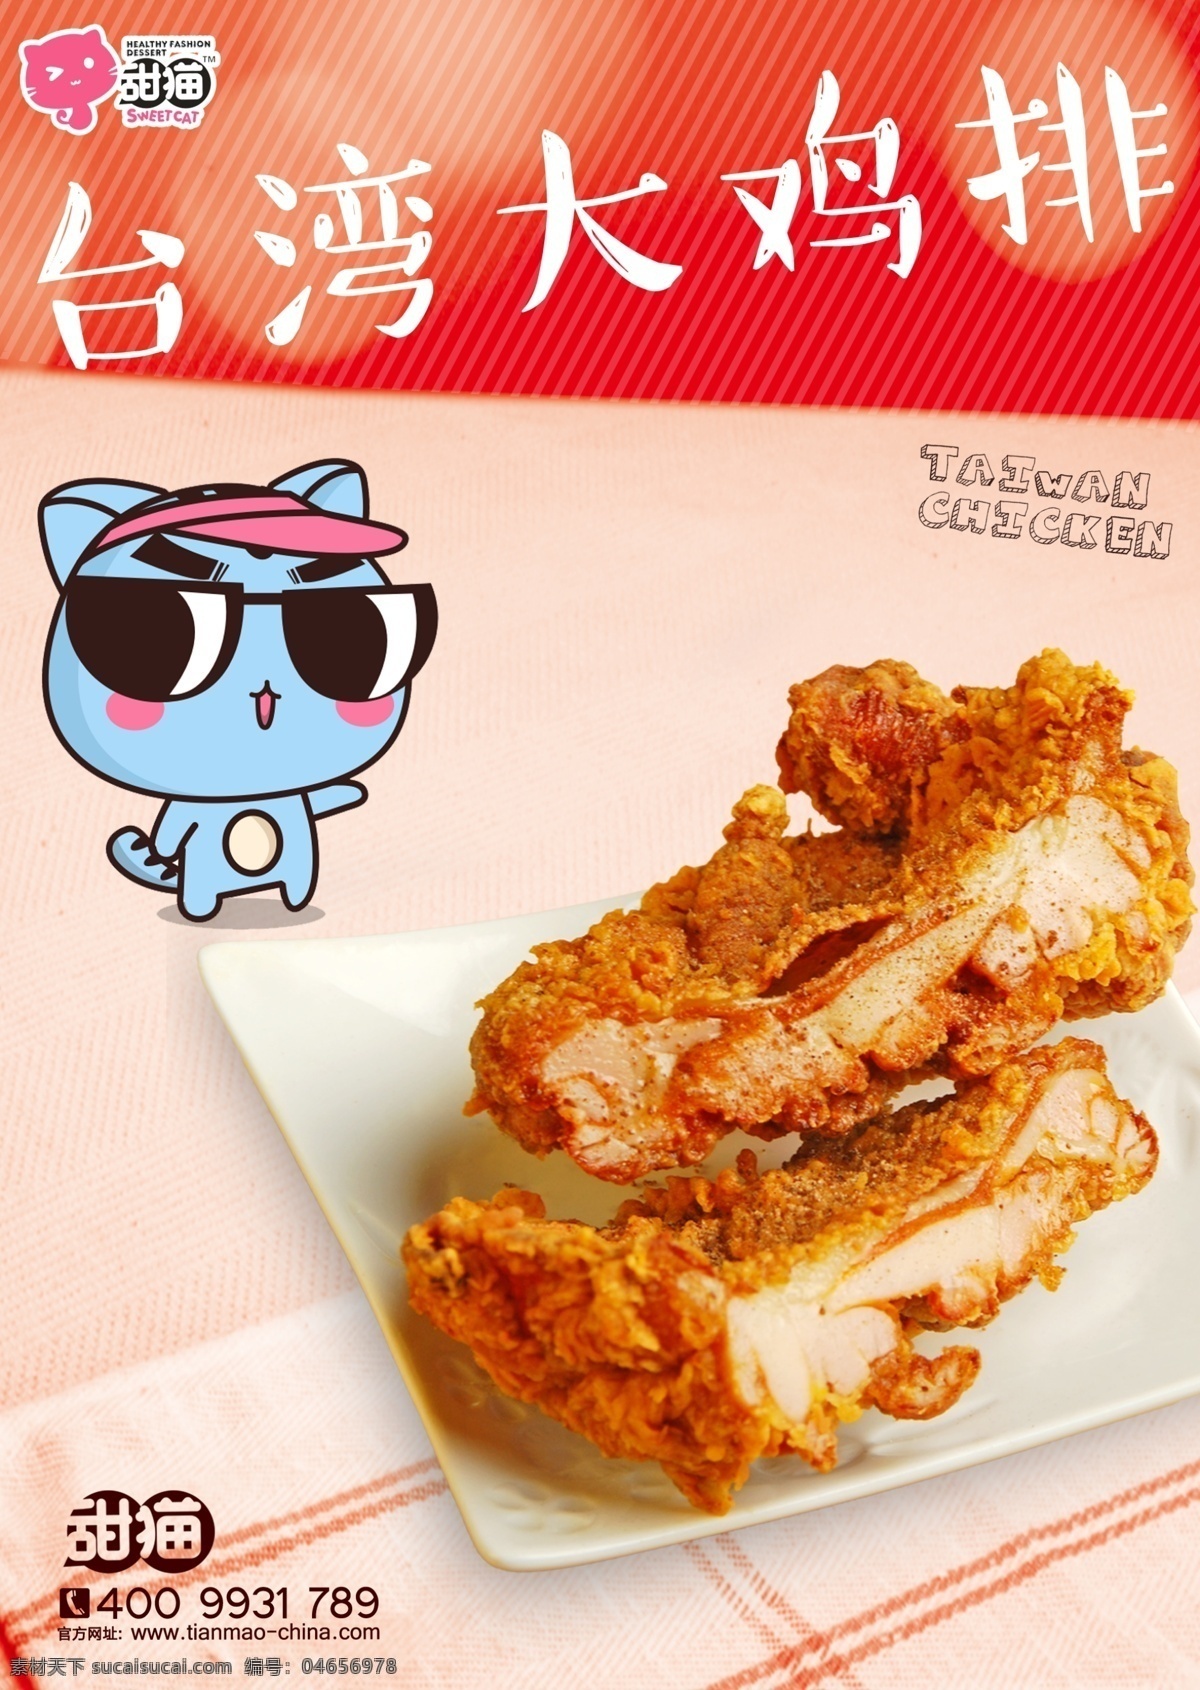 台湾 大 鸡 排 宣传海报 甜猫甜品 台湾大鸡排 宣传单页 彩色背景 红色